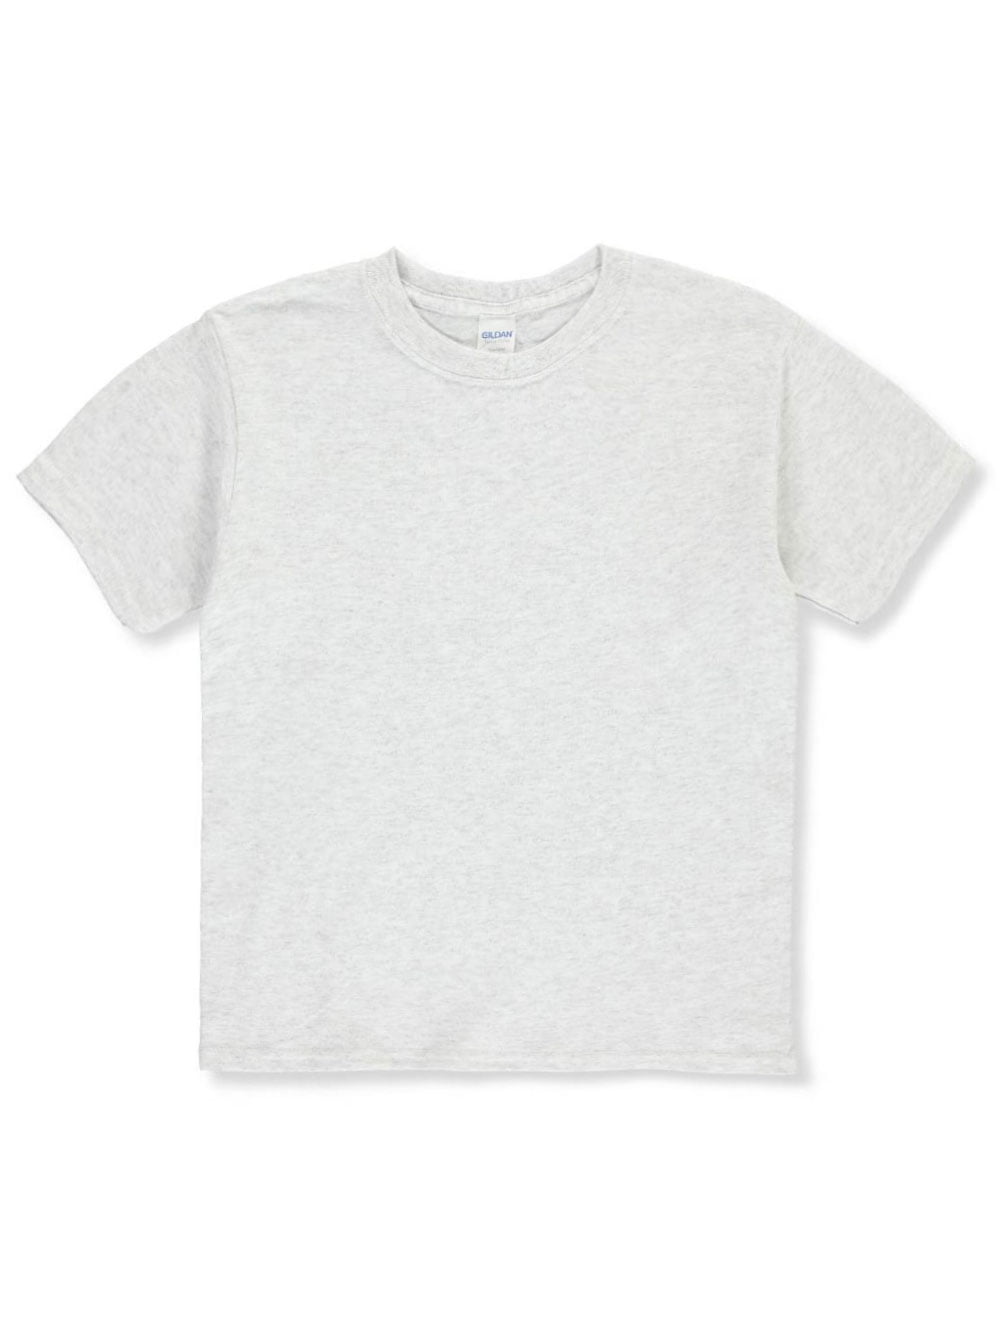 Gildan Unisex Youth T-Shirt - sport gray, xs/4-5 (Little Girls)